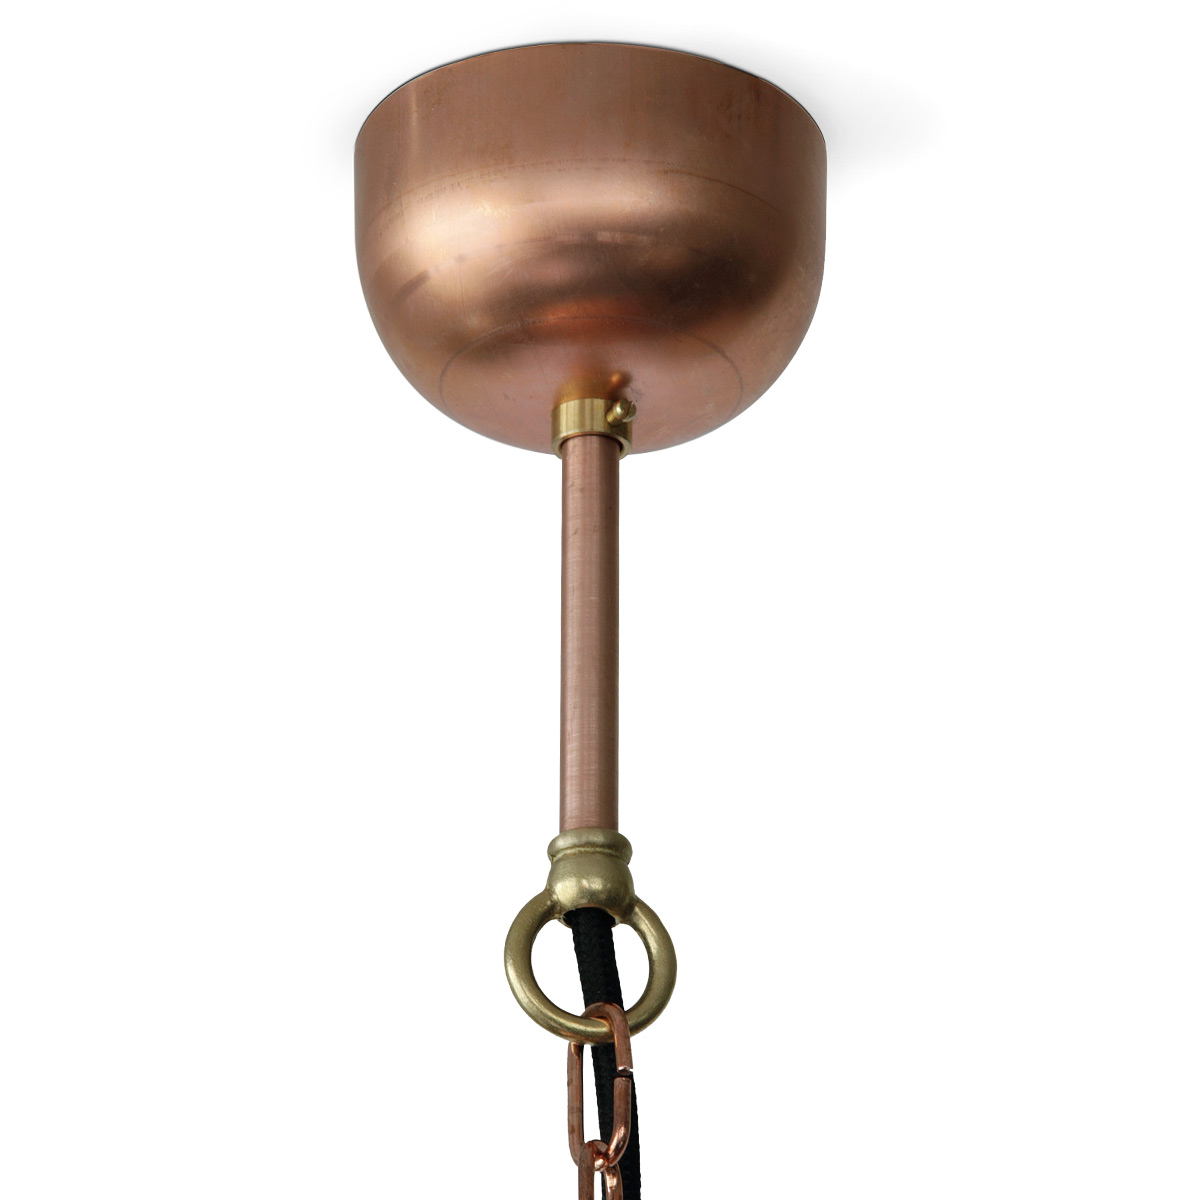 KEHL Hängelampe mit gewölbtem Schirm aus Kupfer, Ø 25-50 cm: Baldachin in Kupfer roh